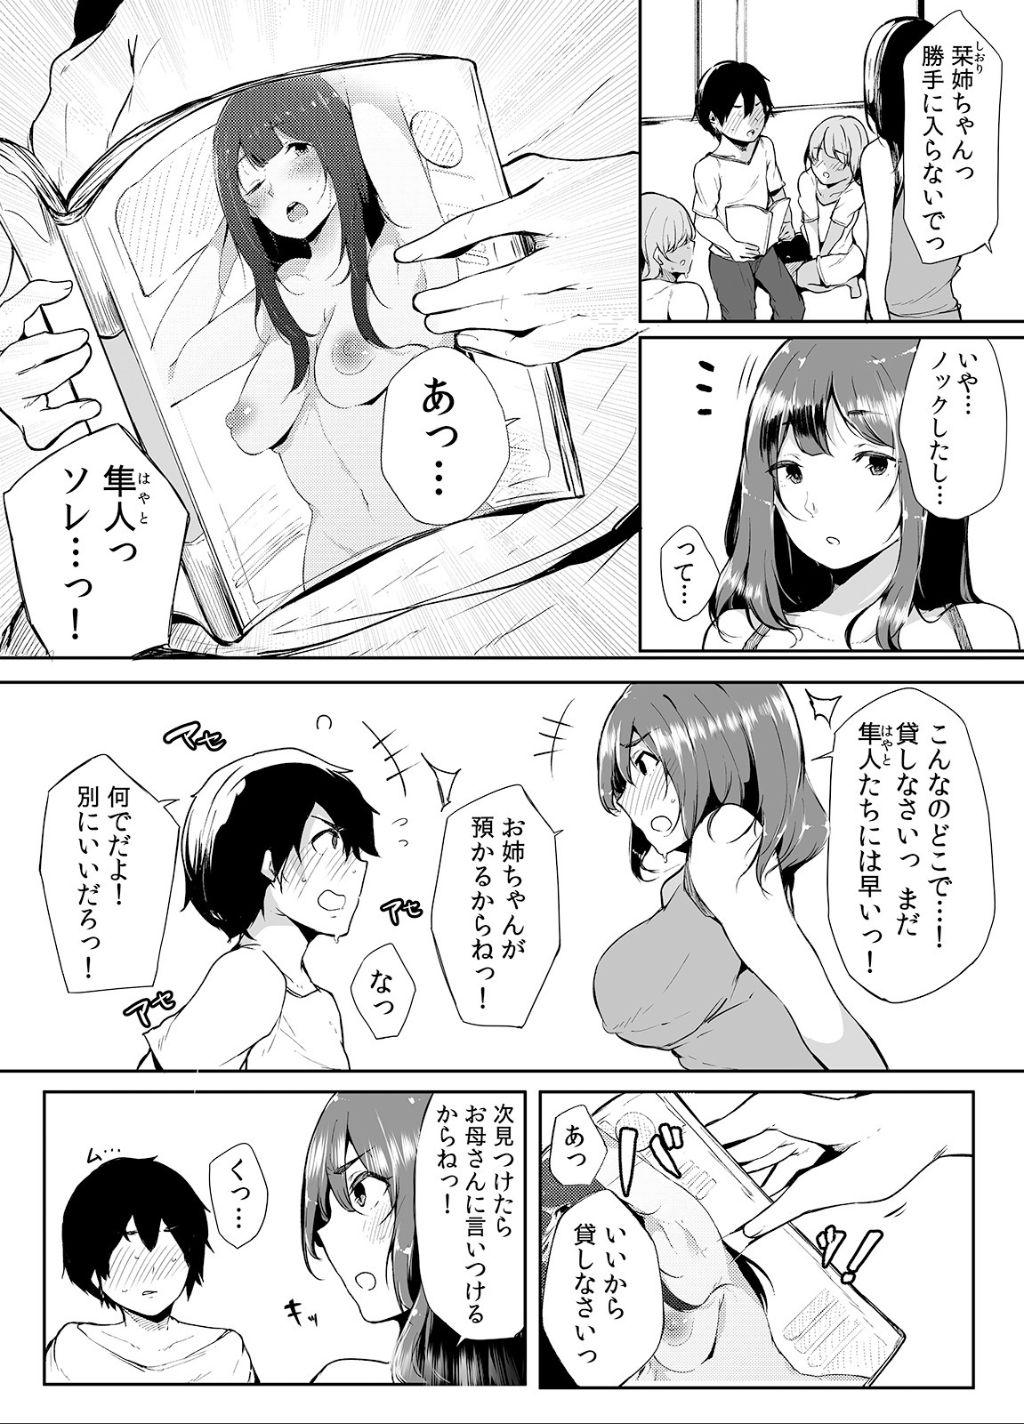 Bisexual Otouto ni Ero Manga to Onaji Koto o Sare Chau o Nee-chan no Hanashi 1 - Original Boy - Page 5